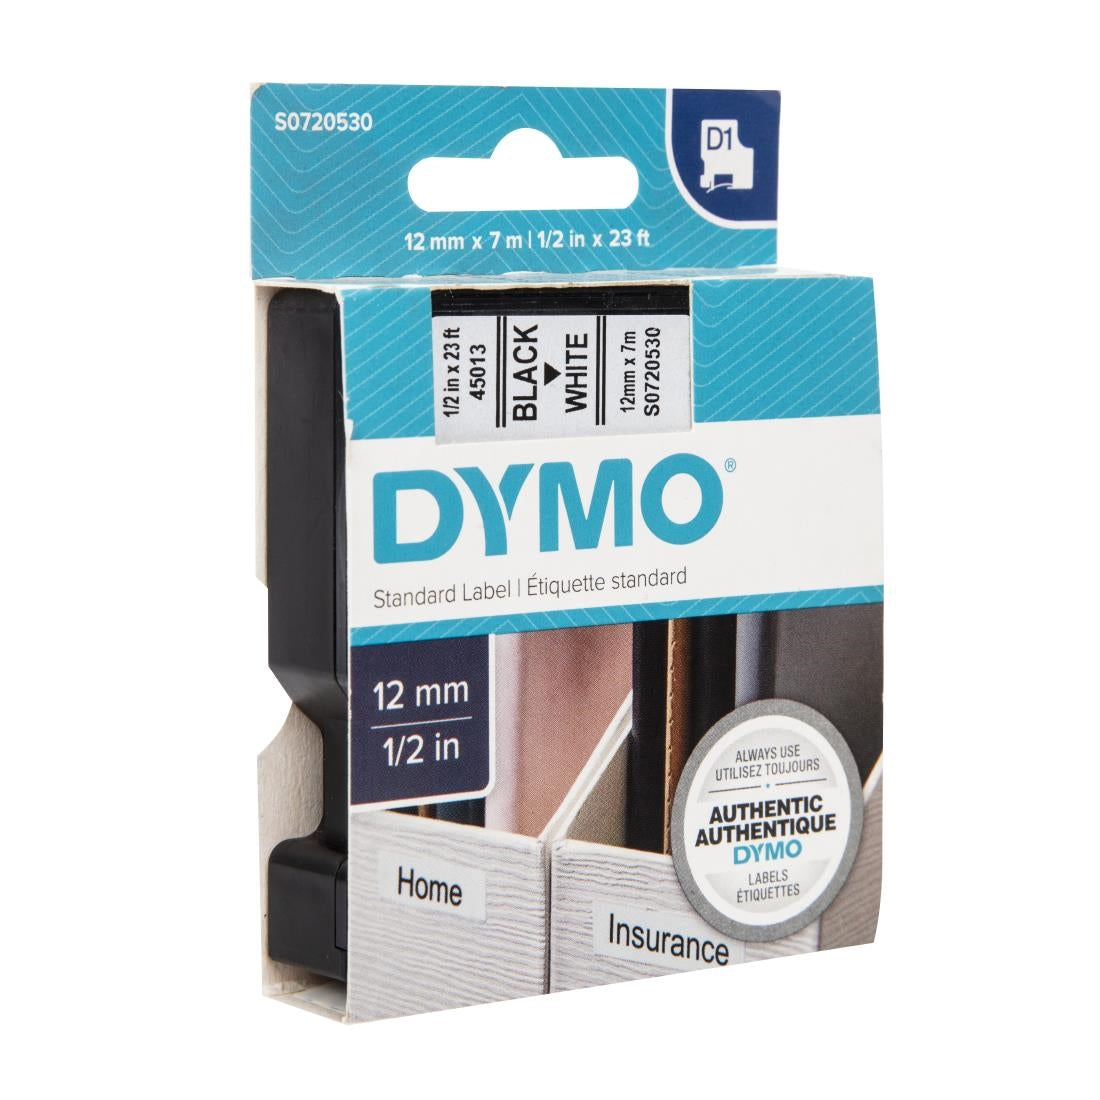 DYMO D1 Tape Refill 12mm Black on White JD Catering Equipment Solutions Ltd